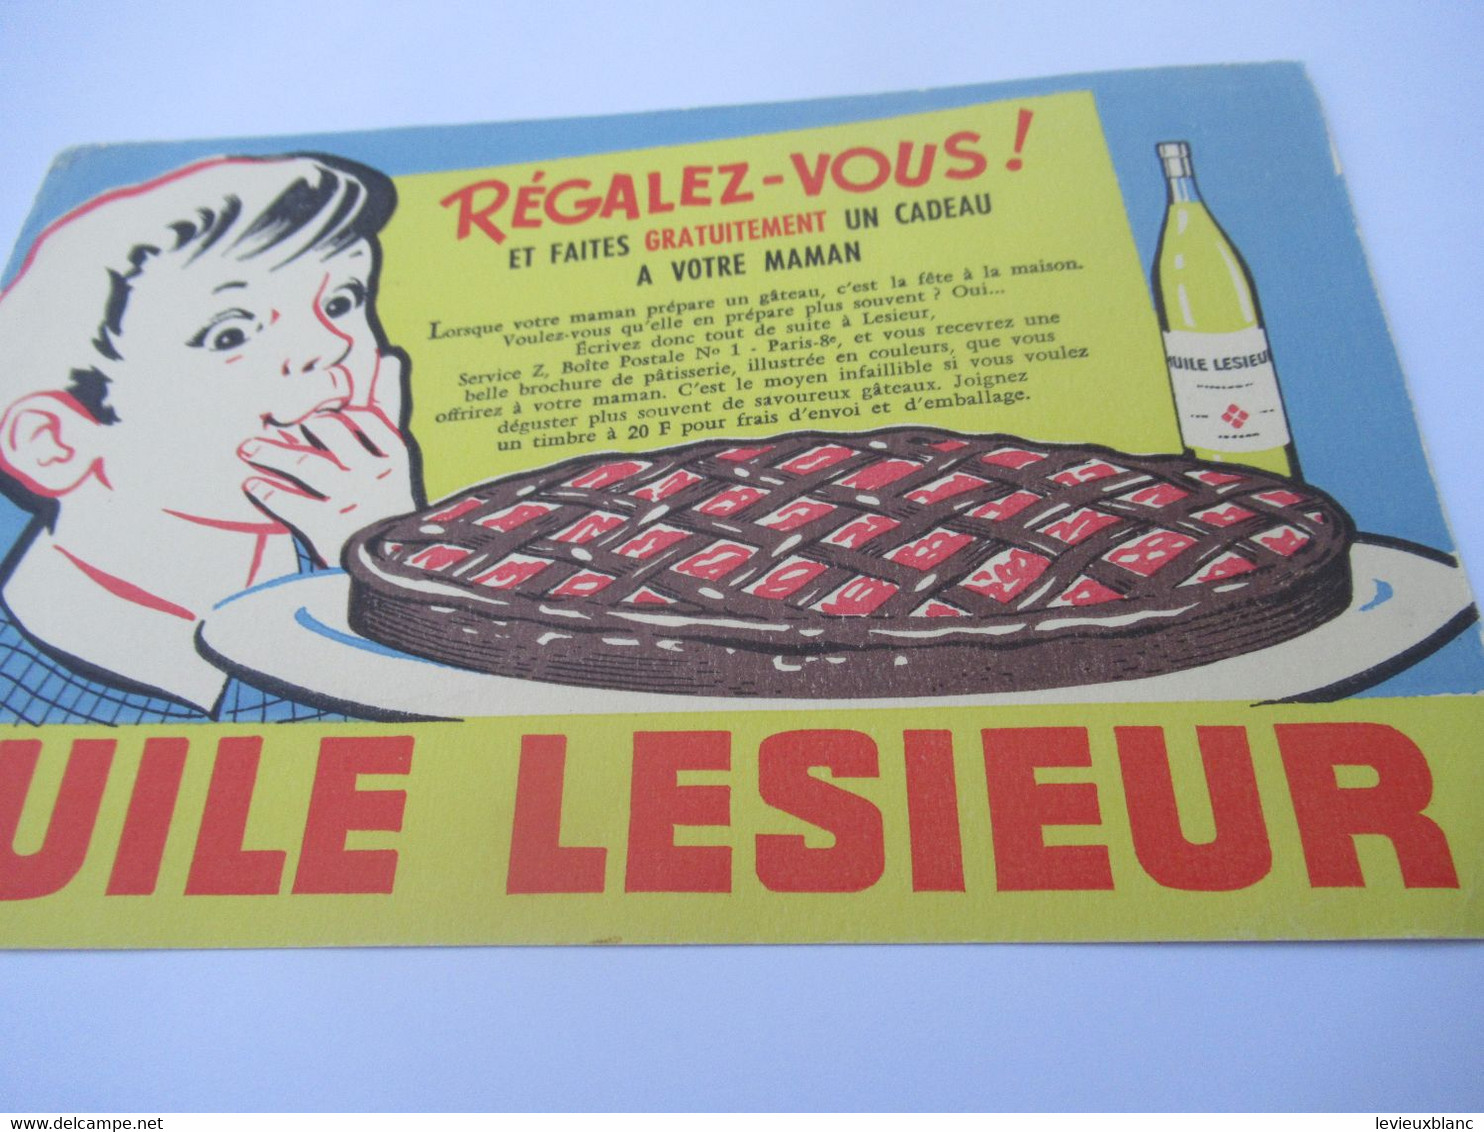 Buvard Publicitaire/Huile  /HUILE LESIEUR/ Régalez-vous/Faire Un Gâteau /Alexandre/ Vers 1950-1960             BUV644 - Milchprodukte